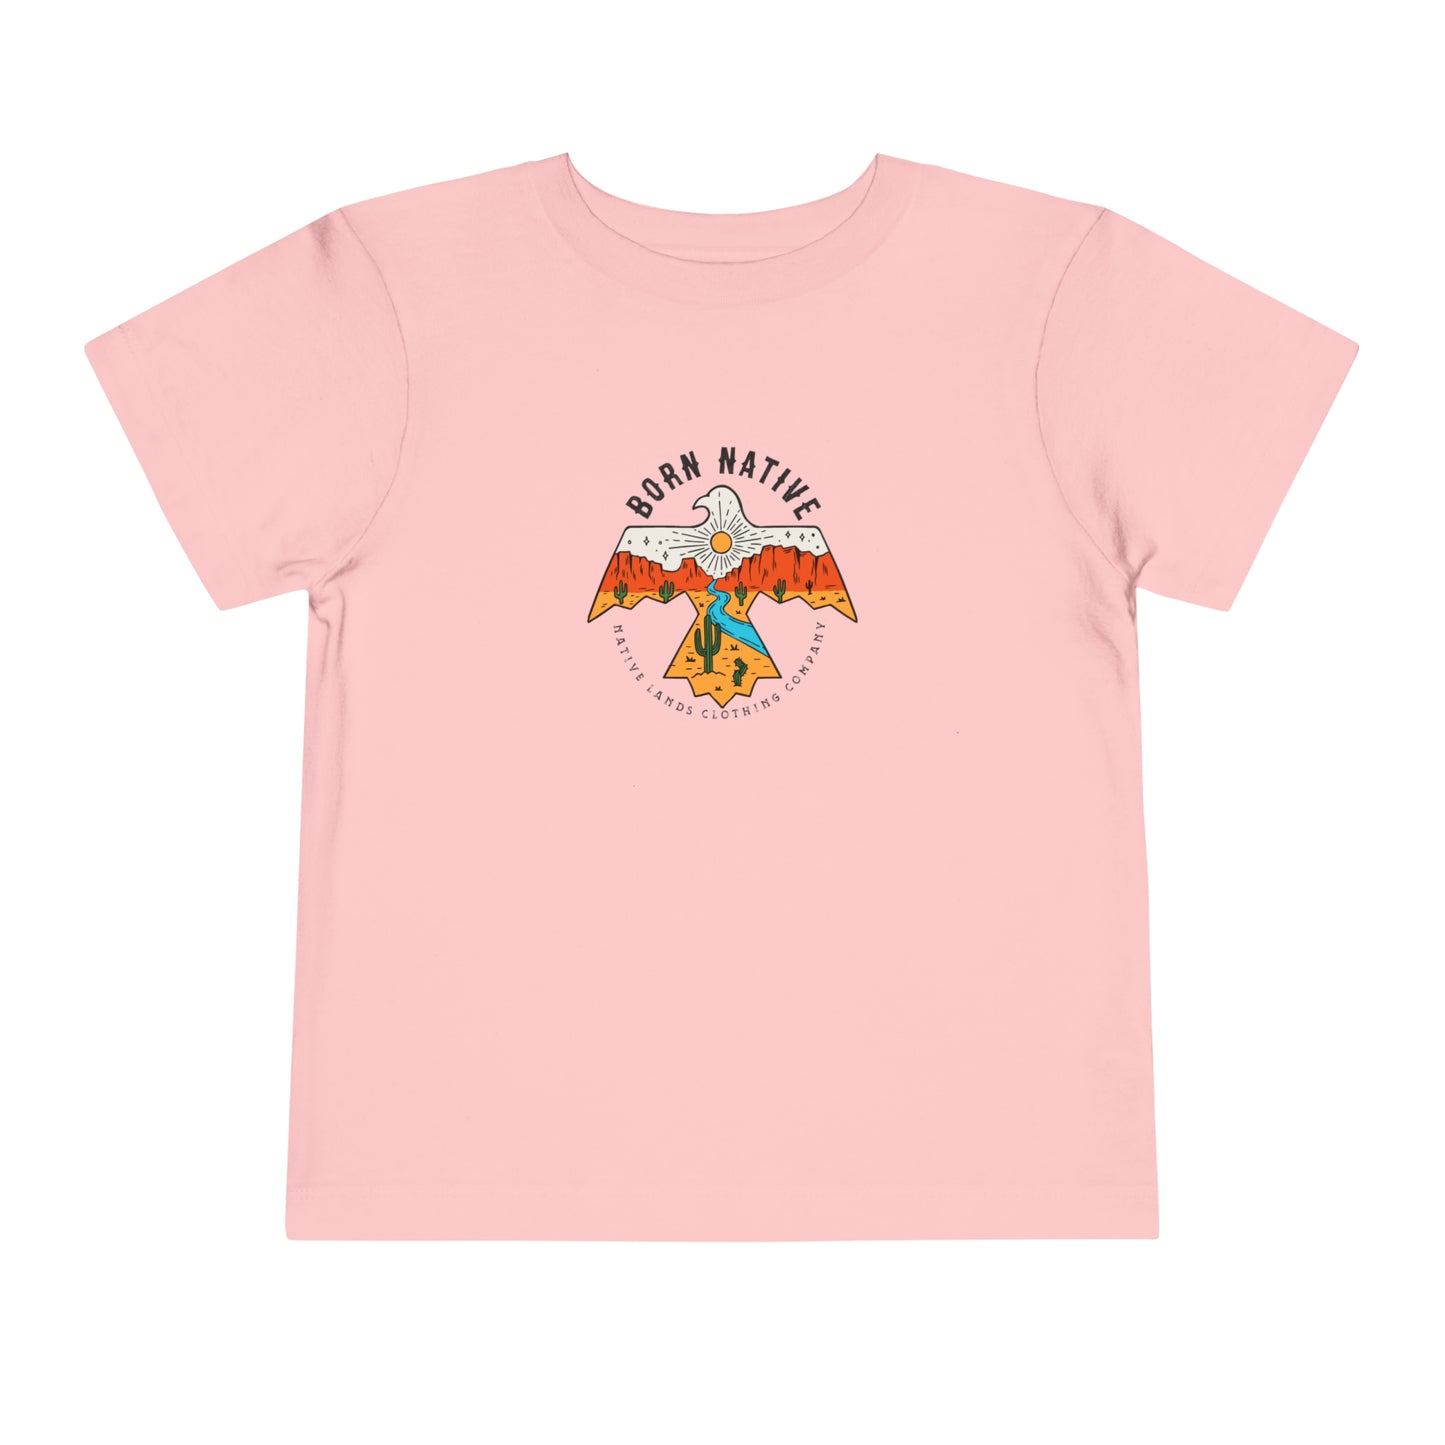 Camicia nativa nata in cotone per bambini nativi americani